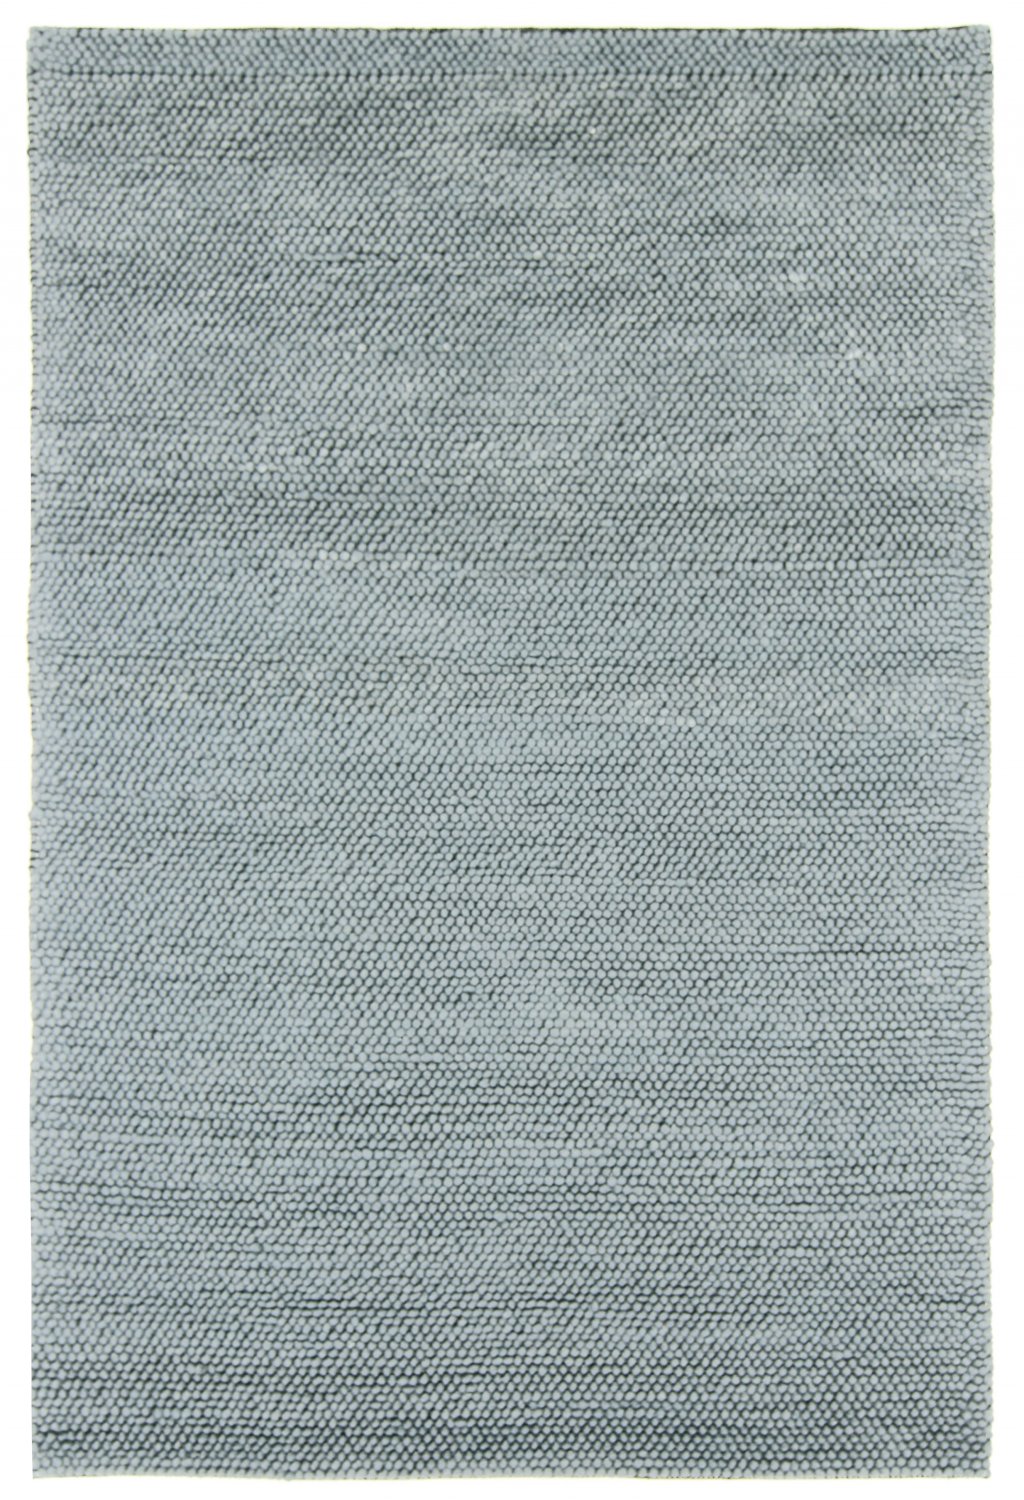 Teppiche 100% Leder Flachgewebe Handgefertigt Grau Ca 8 Mm Pixel Kasten Design 